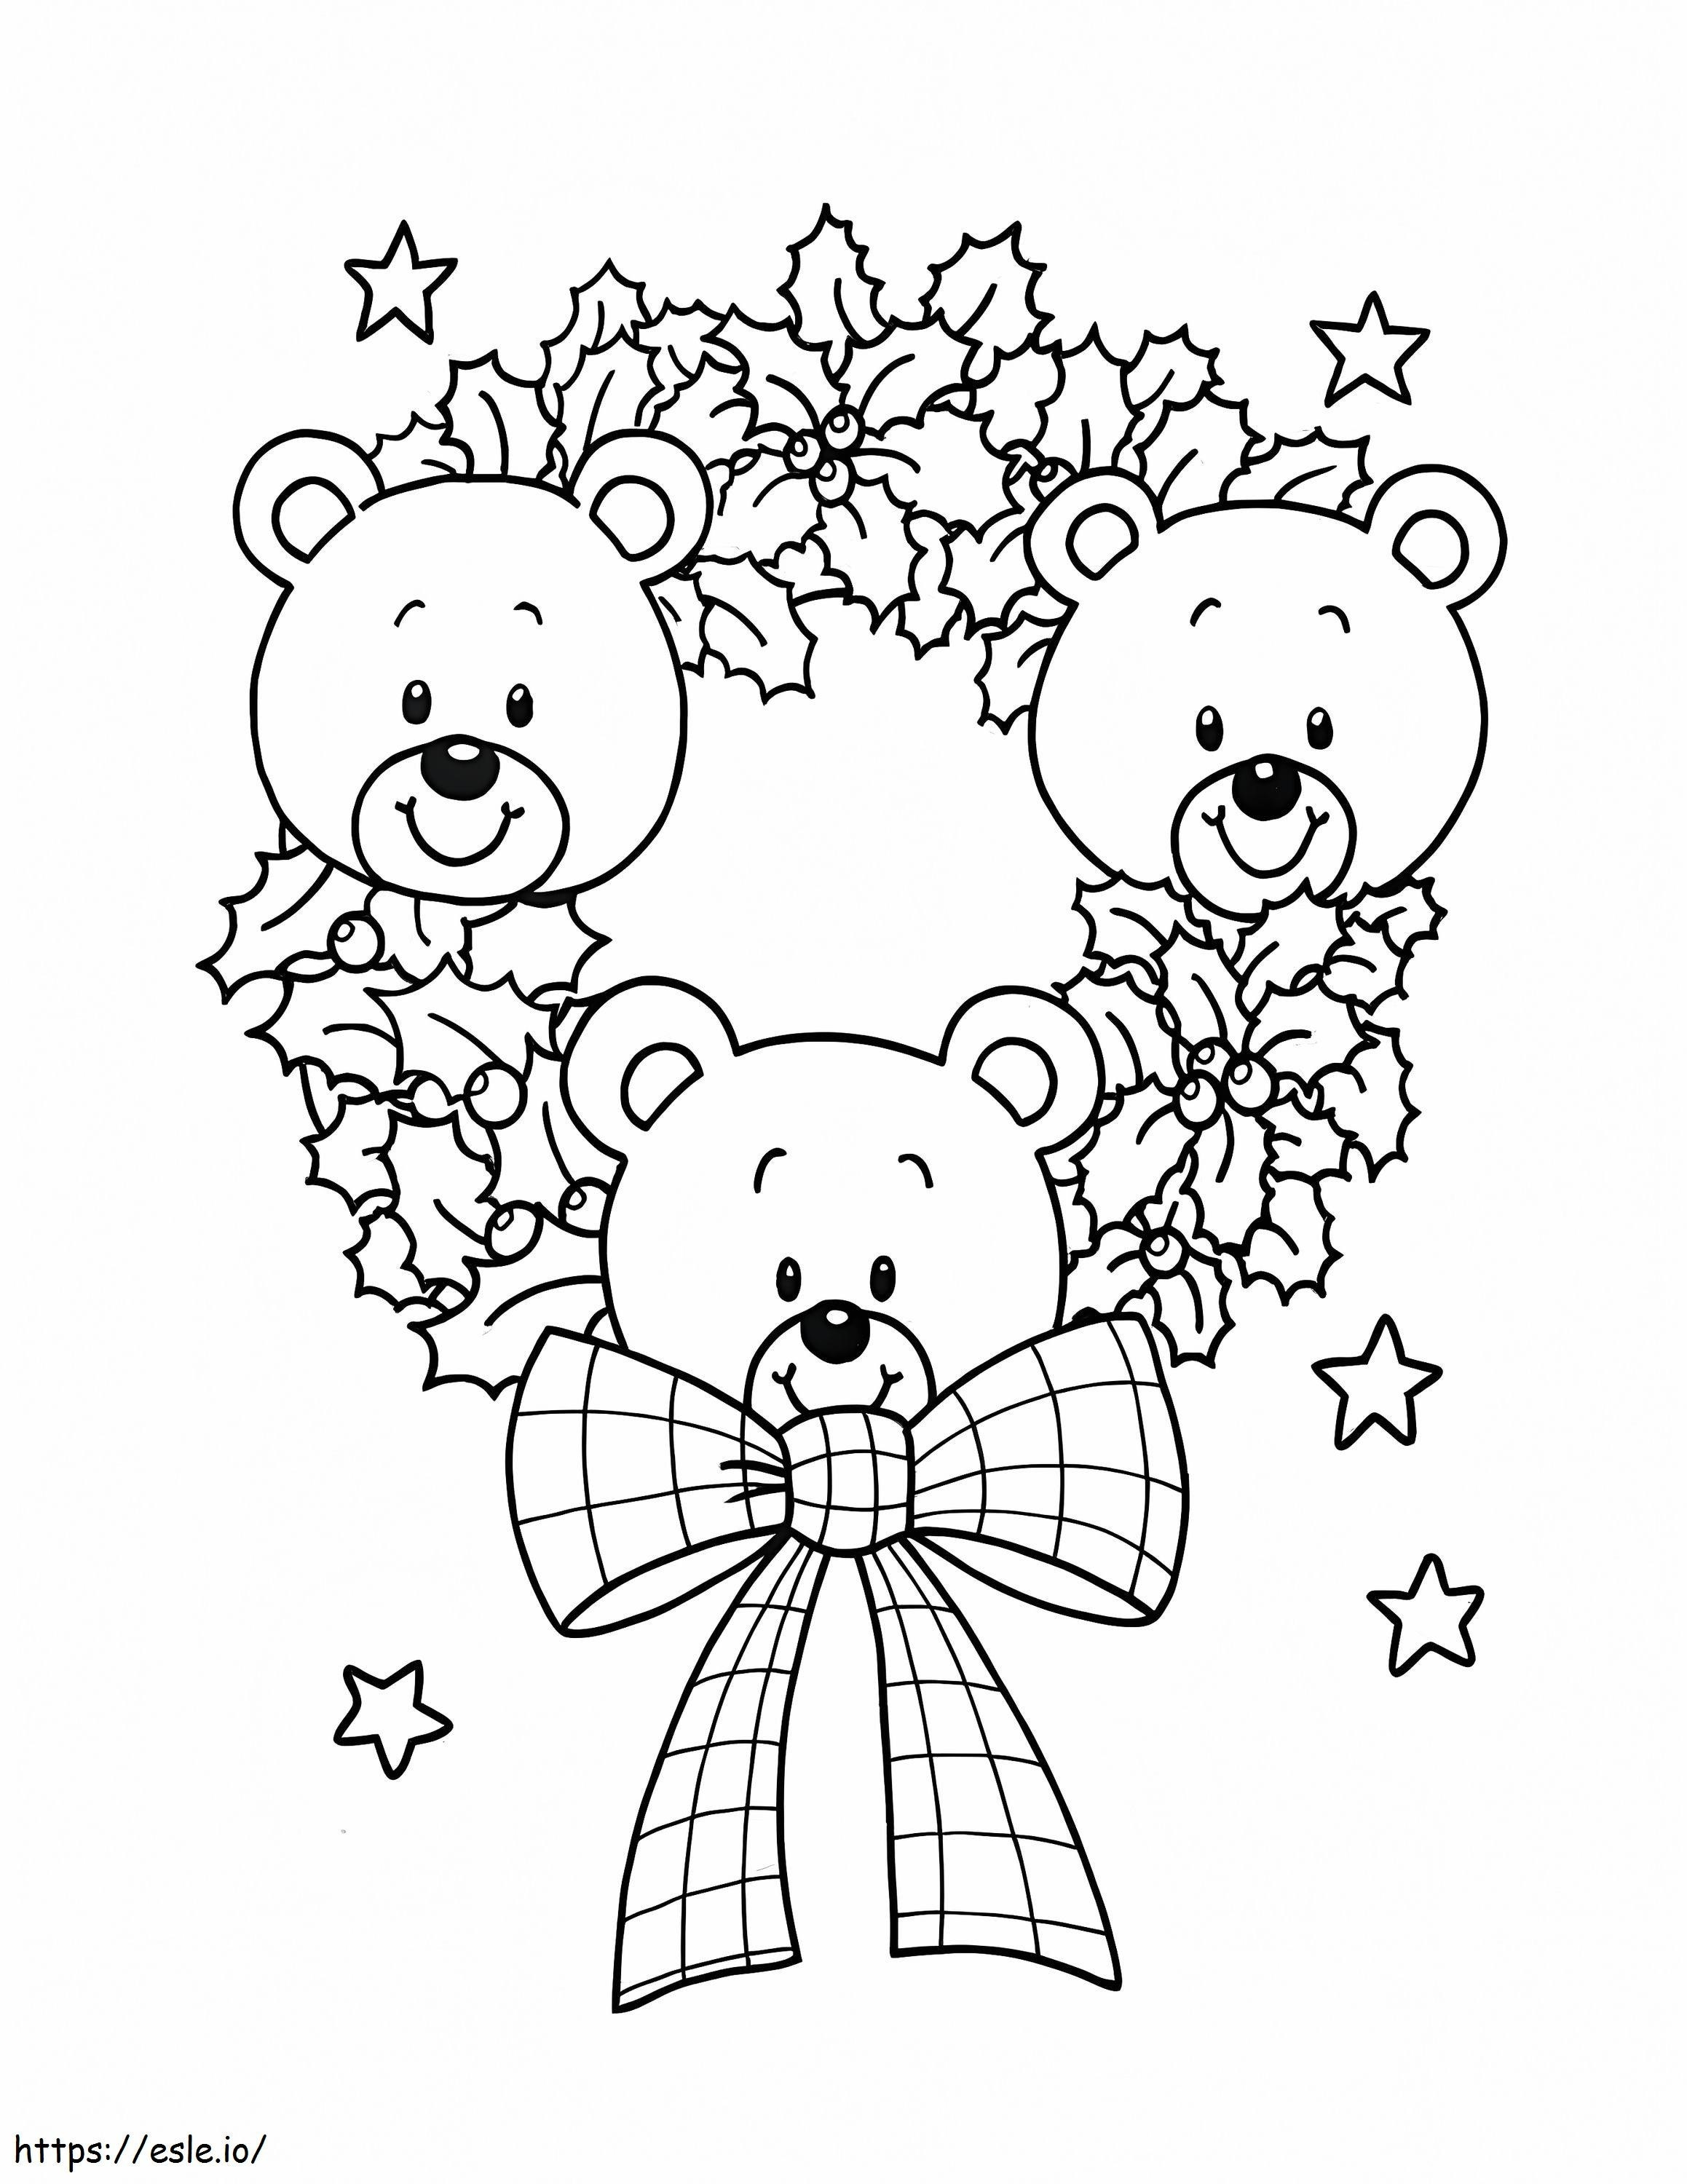 Weihnachtskranz mit Teddybären ausmalbilder